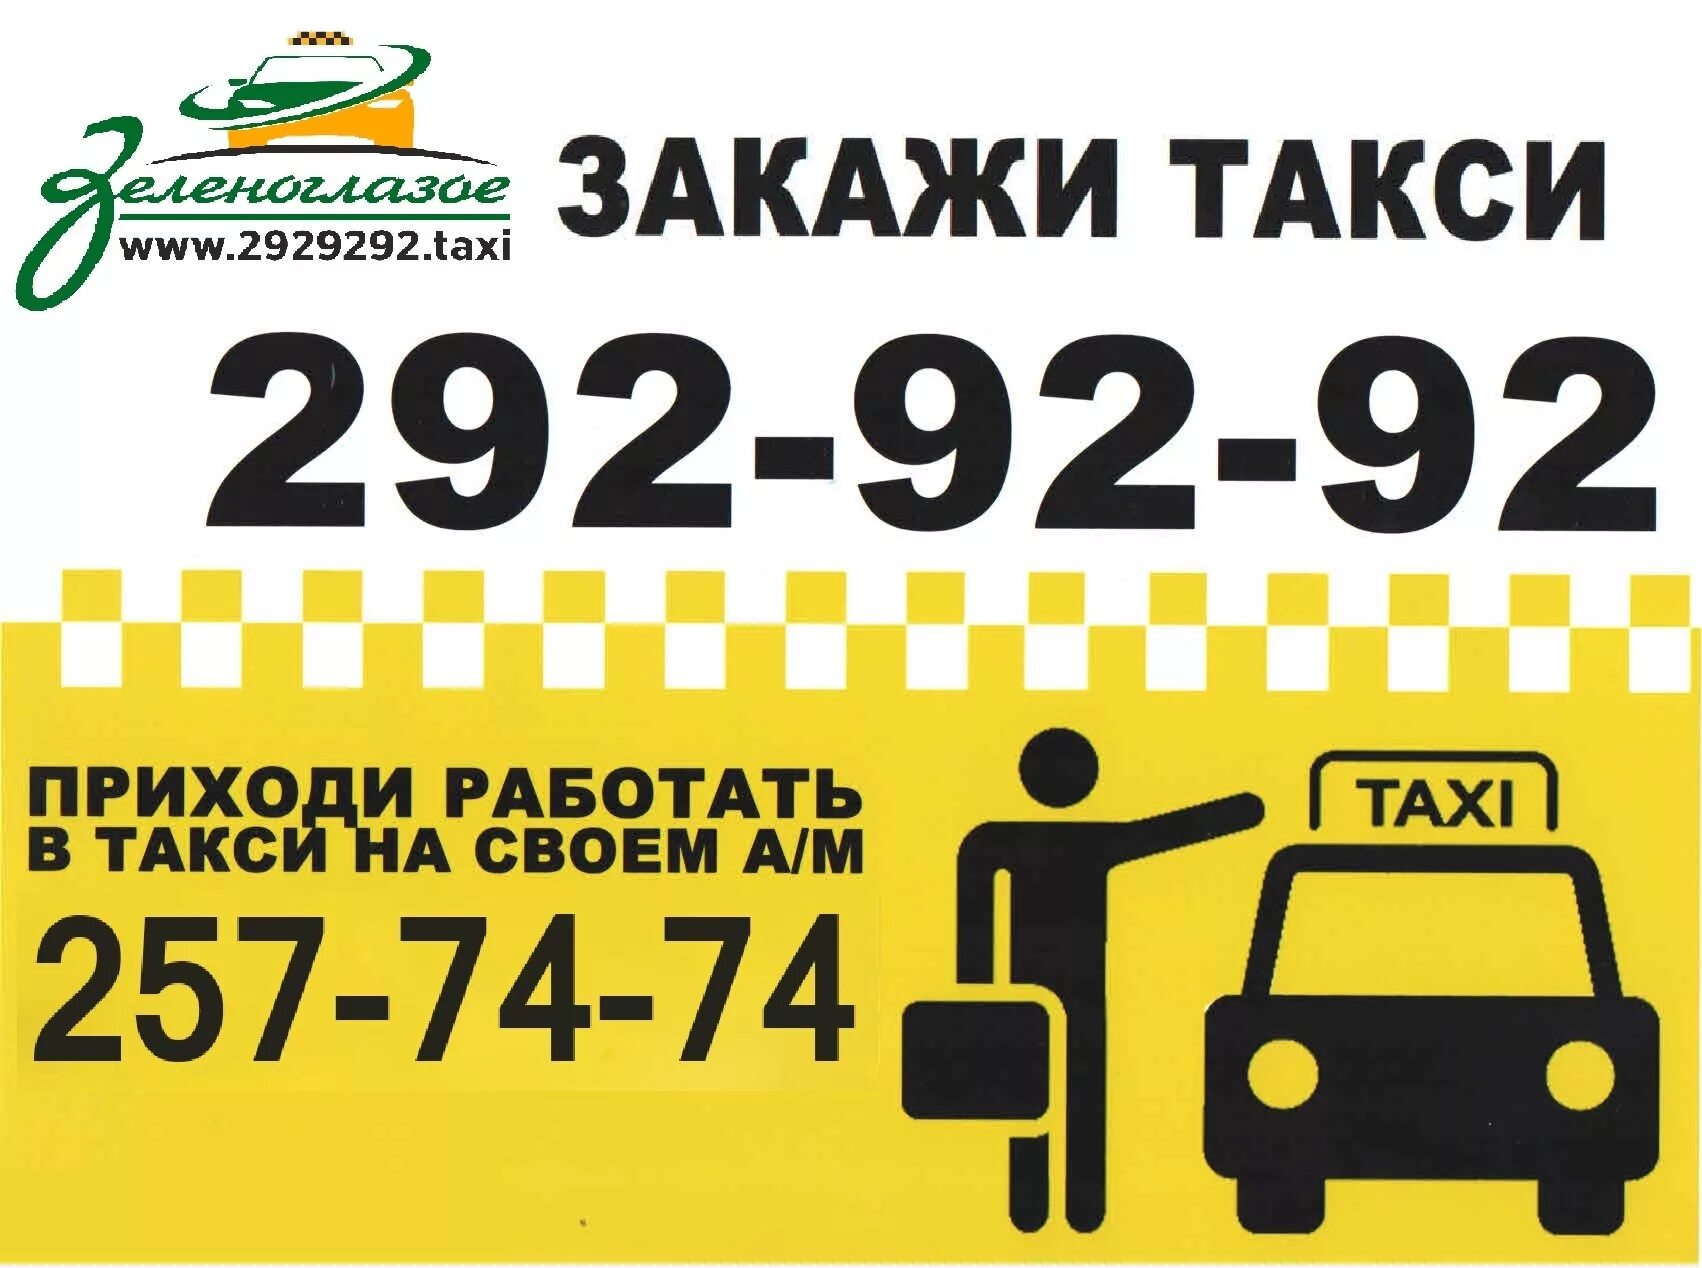 Какой есть номер телефона такси. Закажи такси. Самое дешевое такси номер. Такси Уфа. Номер недорогого такси.